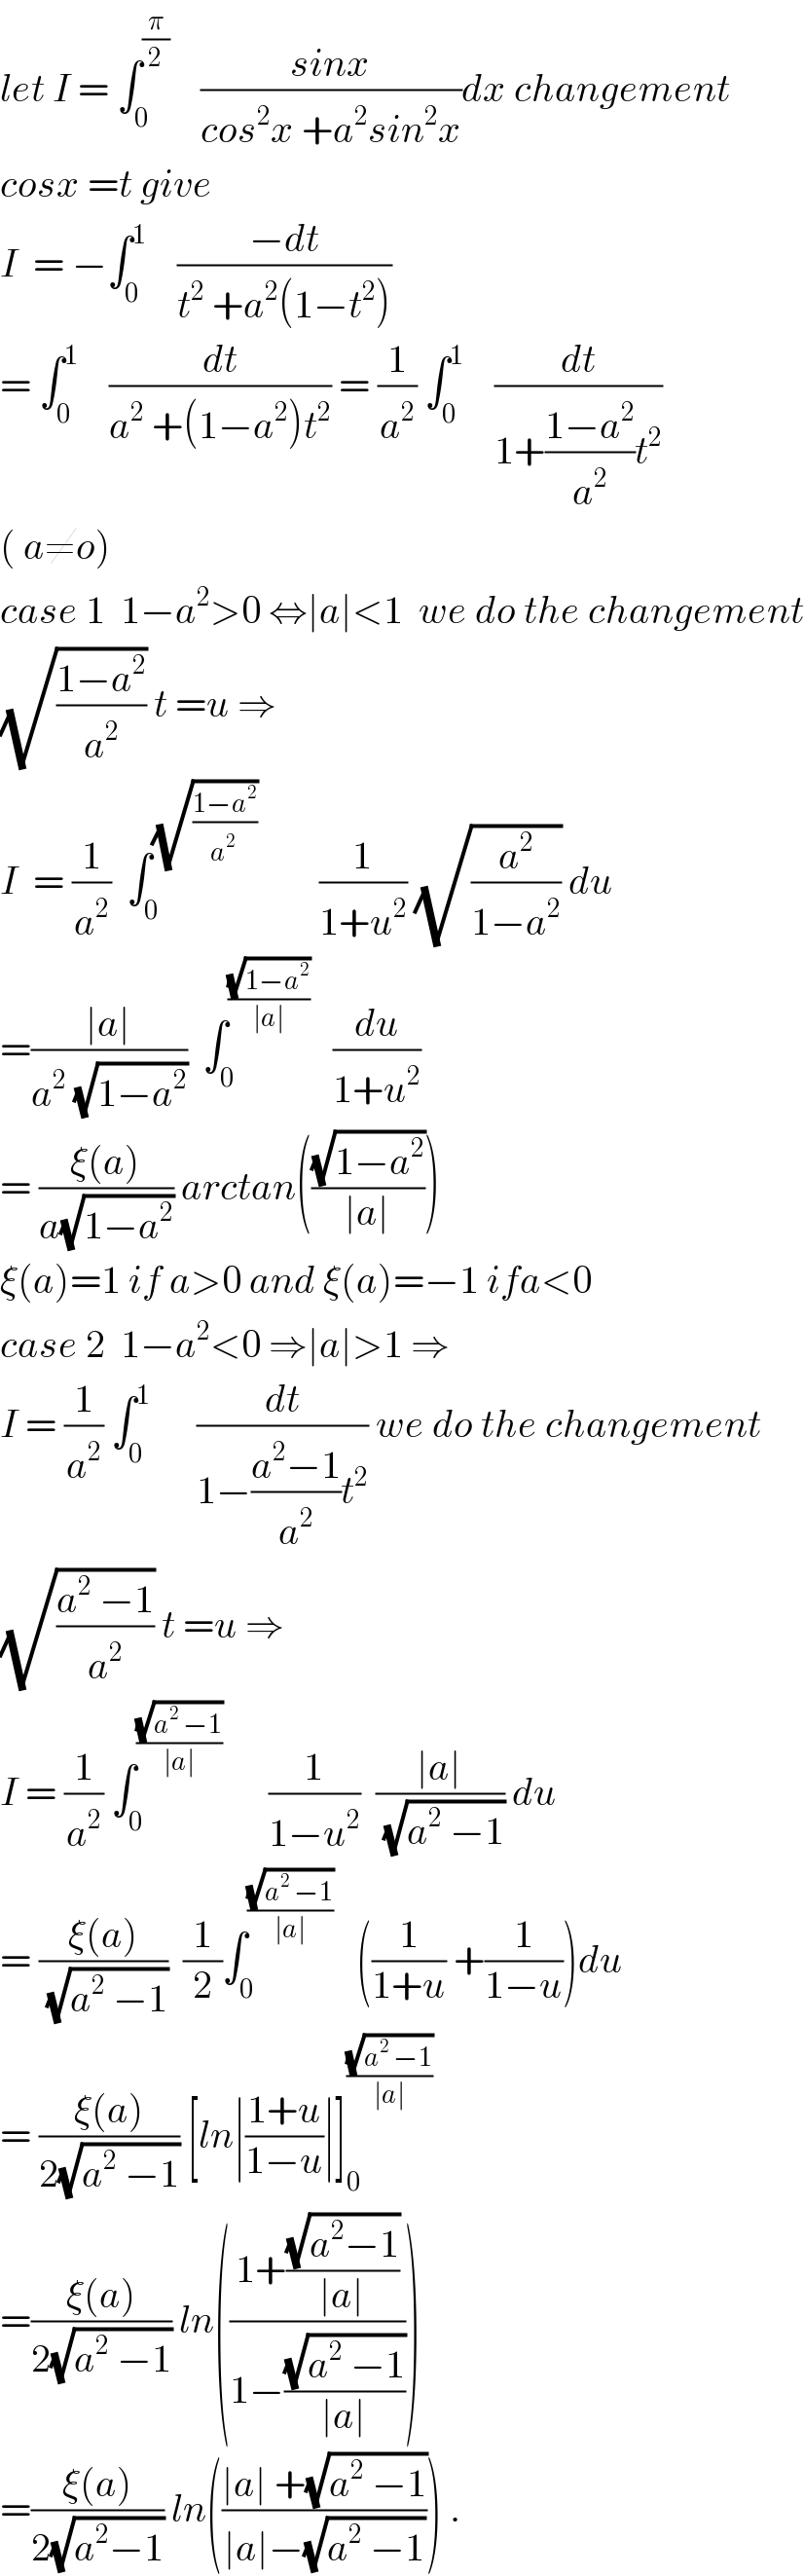 let I = ∫_0 ^(π/2)     ((sinx)/(cos^2 x +a^2 sin^2 x))dx changement  cosx =t give   I  = −∫_0 ^1     ((−dt)/(t^2  +a^2 (1−t^2 )))  = ∫_0 ^1     (dt/(a^2  +(1−a^2 )t^2 )) = (1/a^2 ) ∫_0 ^1     (dt/(1+((1−a^2 )/a^2 )t^2 ))  ( a≠o)  case 1  1−a^2 >0 ⇔∣a∣<1  we do the changement  (√((1−a^2 )/a^2 )) t =u ⇒  I  = (1/a^2 )  ∫_0 ^(√((1−a^2 )/(a^2  )))         (1/(1+u^2 )) (√(a^2 /(1−a^2 ))) du  =((∣a∣)/(a^2  (√(1−a^2 ))))  ∫_0 ^((√(1−a^2 ))/(∣a∣))    (du/(1+u^2 ))  = ((ξ(a))/(a(√(1−a^2 )))) arctan(((√(1−a^2 ))/(∣a∣)))   ξ(a)=1 if a>0 and ξ(a)=−1 ifa<0  case 2  1−a^2 <0 ⇒∣a∣>1 ⇒  I = (1/a^2 ) ∫_0 ^1       (dt/(1−((a^2 −1)/a^2 )t^2 )) we do the changement  (√((a^2  −1)/a^2 )) t =u ⇒  I = (1/a^2 ) ∫_0 ^((√(a^2  −1))/(∣a∣))       (1/(1−u^2 ))  ((∣a∣)/(√(a^2  −1))) du  = ((ξ(a))/(√(a^2  −1)))  (1/2)∫_0 ^((√(a^2  −1))/(∣a∣))    ((1/(1+u)) +(1/(1−u)))du  = ((ξ(a))/(2(√(a^2  −1)))) [ln∣((1+u)/(1−u))∣]_0 ^((√(a^2  −1))/(∣a∣))   =((ξ(a))/(2(√(a^2  −1)))) ln(((1+((√(a^2 −1))/(∣a∣)))/(1−((√(a^2  −1))/(∣a∣)))))  =((ξ(a))/(2(√(a^2 −1)))) ln(((∣a∣ +(√(a^2  −1)))/(∣a∣−(√(a^2  −1))))) .  